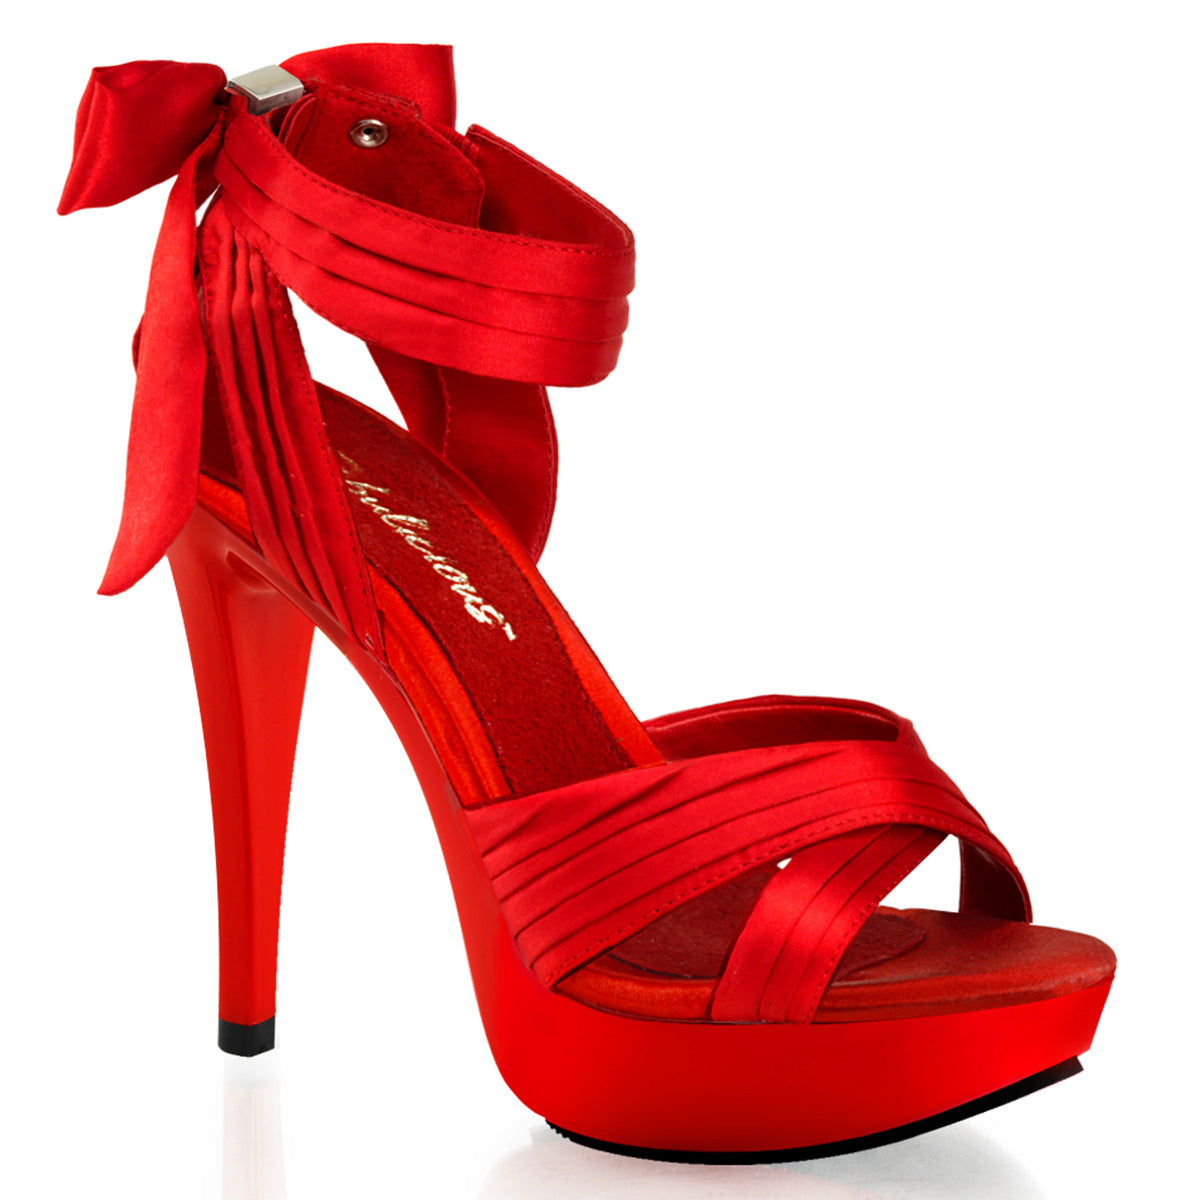 Fabulicious Sandalias para mujer COCKTAIL-568 rojo satinado / rojo